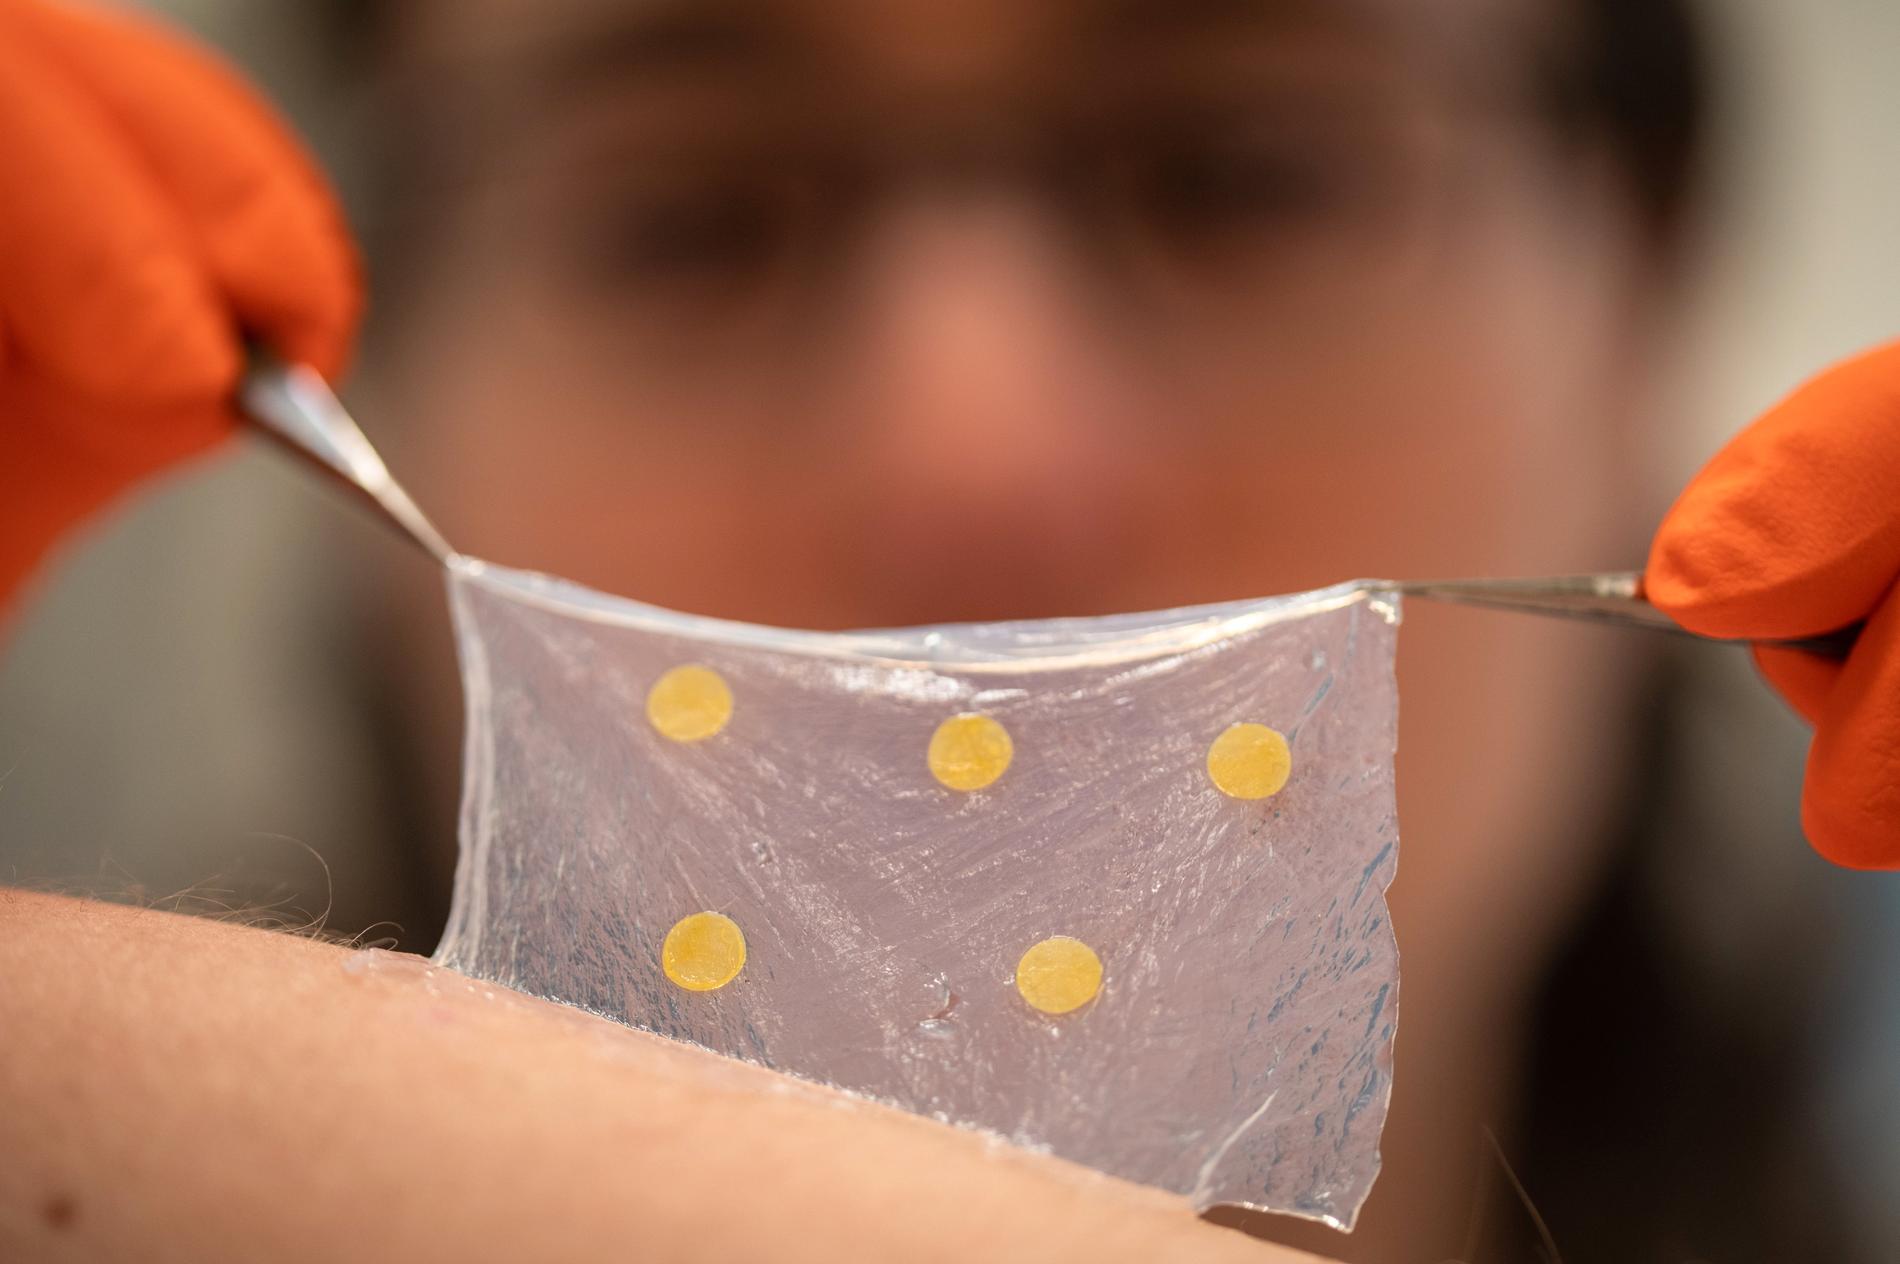 Ett sårförband av nanocellulosa som kan skvallra om infektioner har utvecklats av forskare vid bland annat Linköpings universitet.